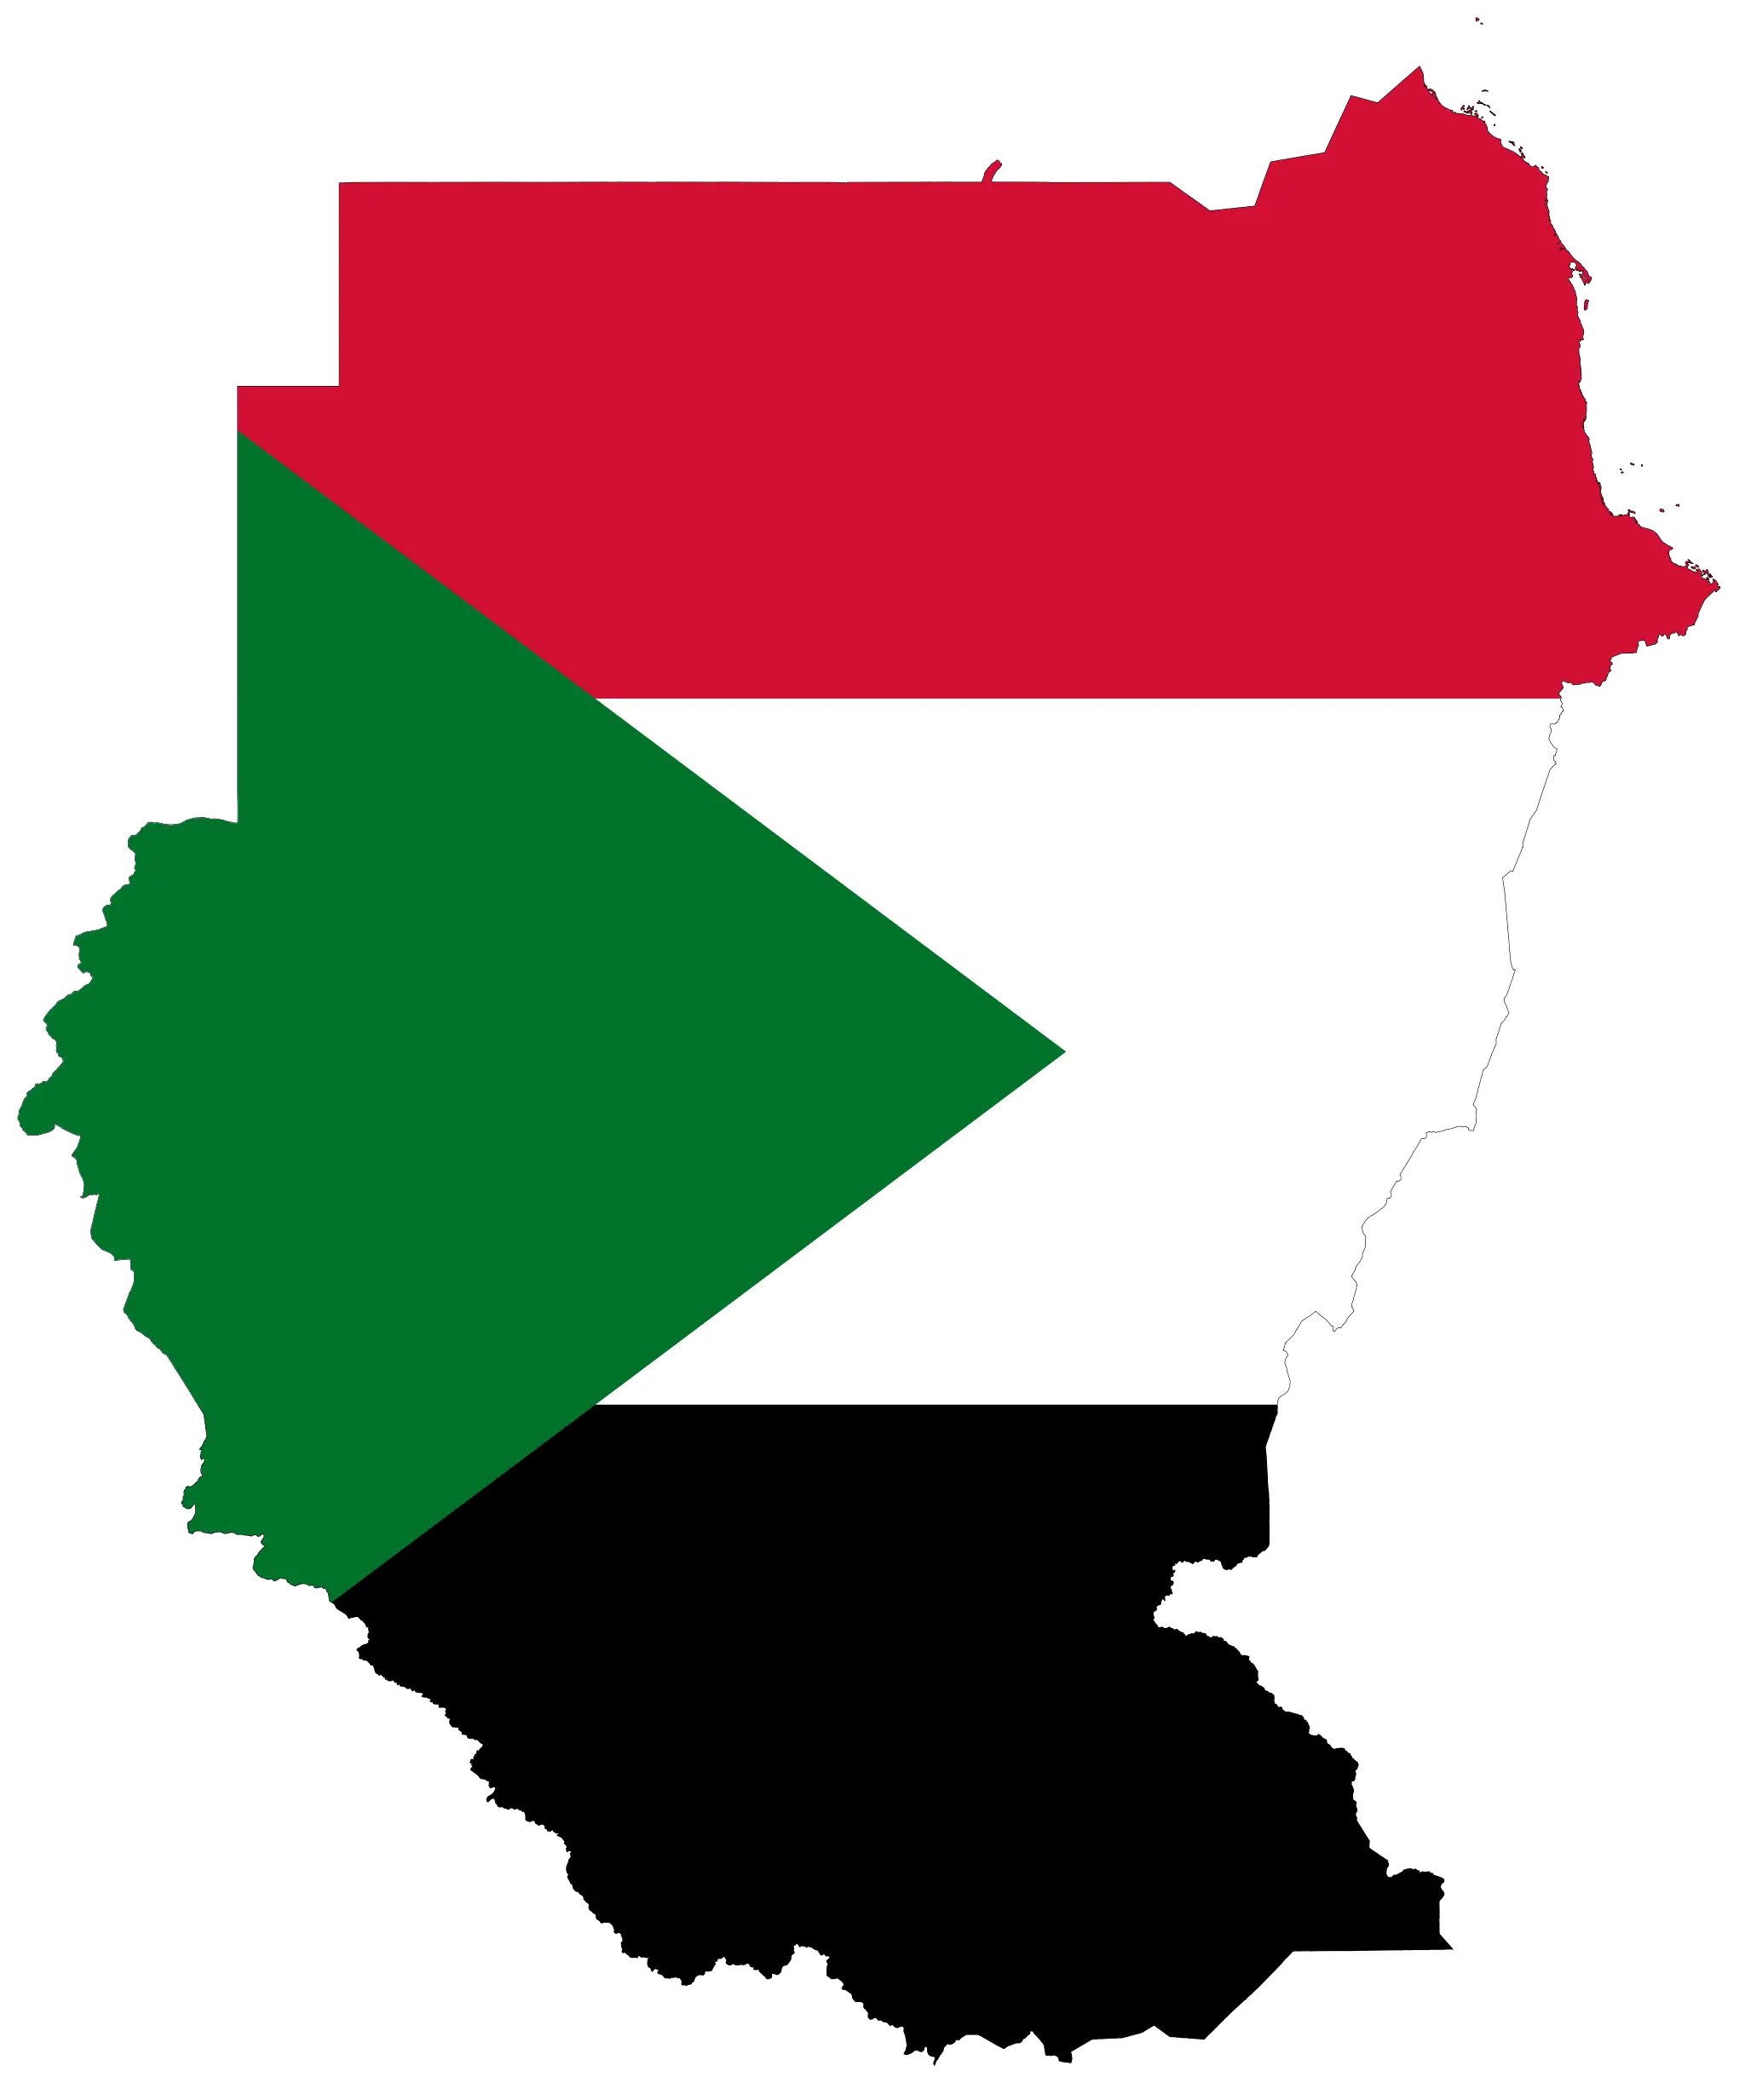 Sudan_bayrak_harita.png